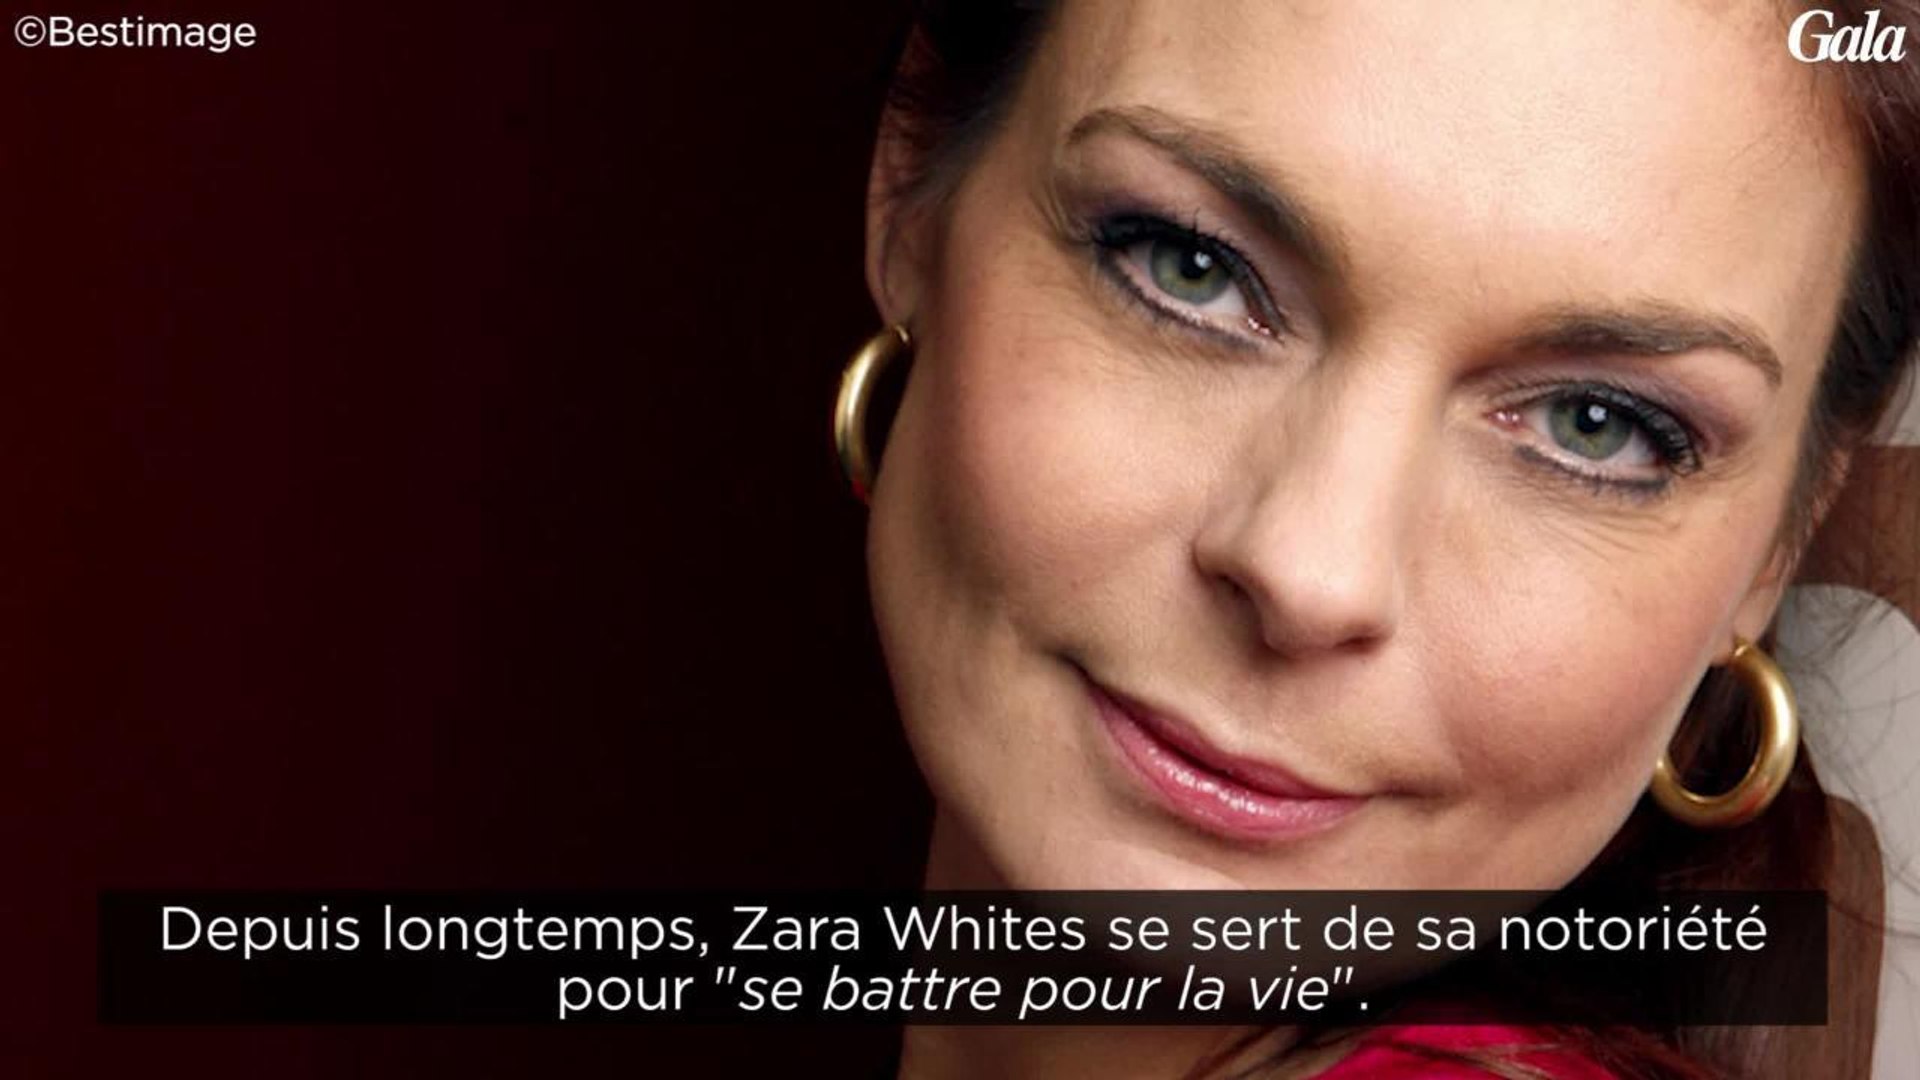 GALA VIDEO - Qui est Esther Kooiman, alias Zara Whites ? - Vidéo Dailymotion